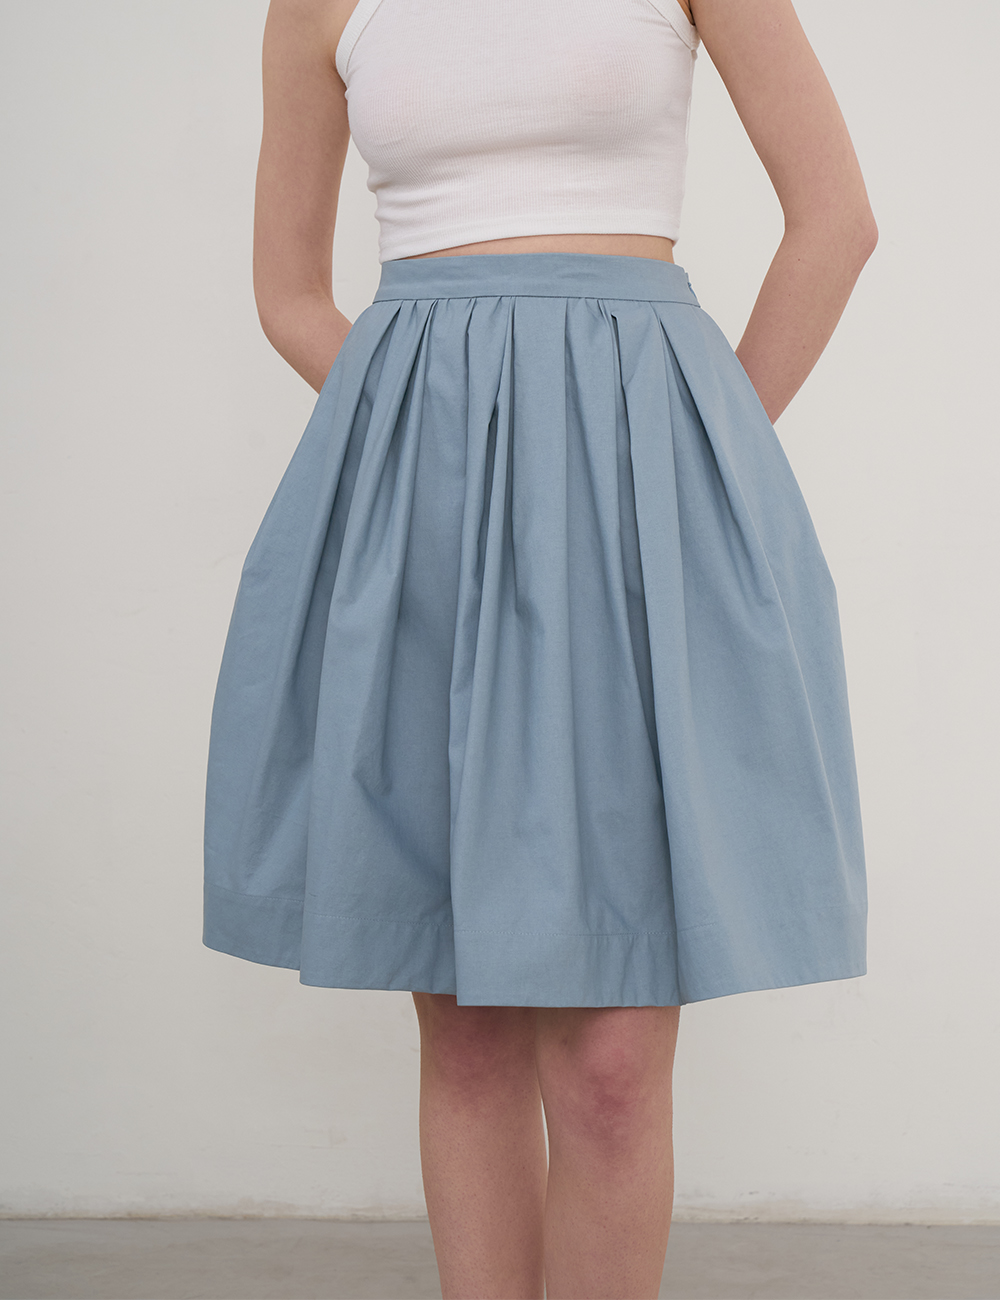 Bonnie Full Skirt (Blue)